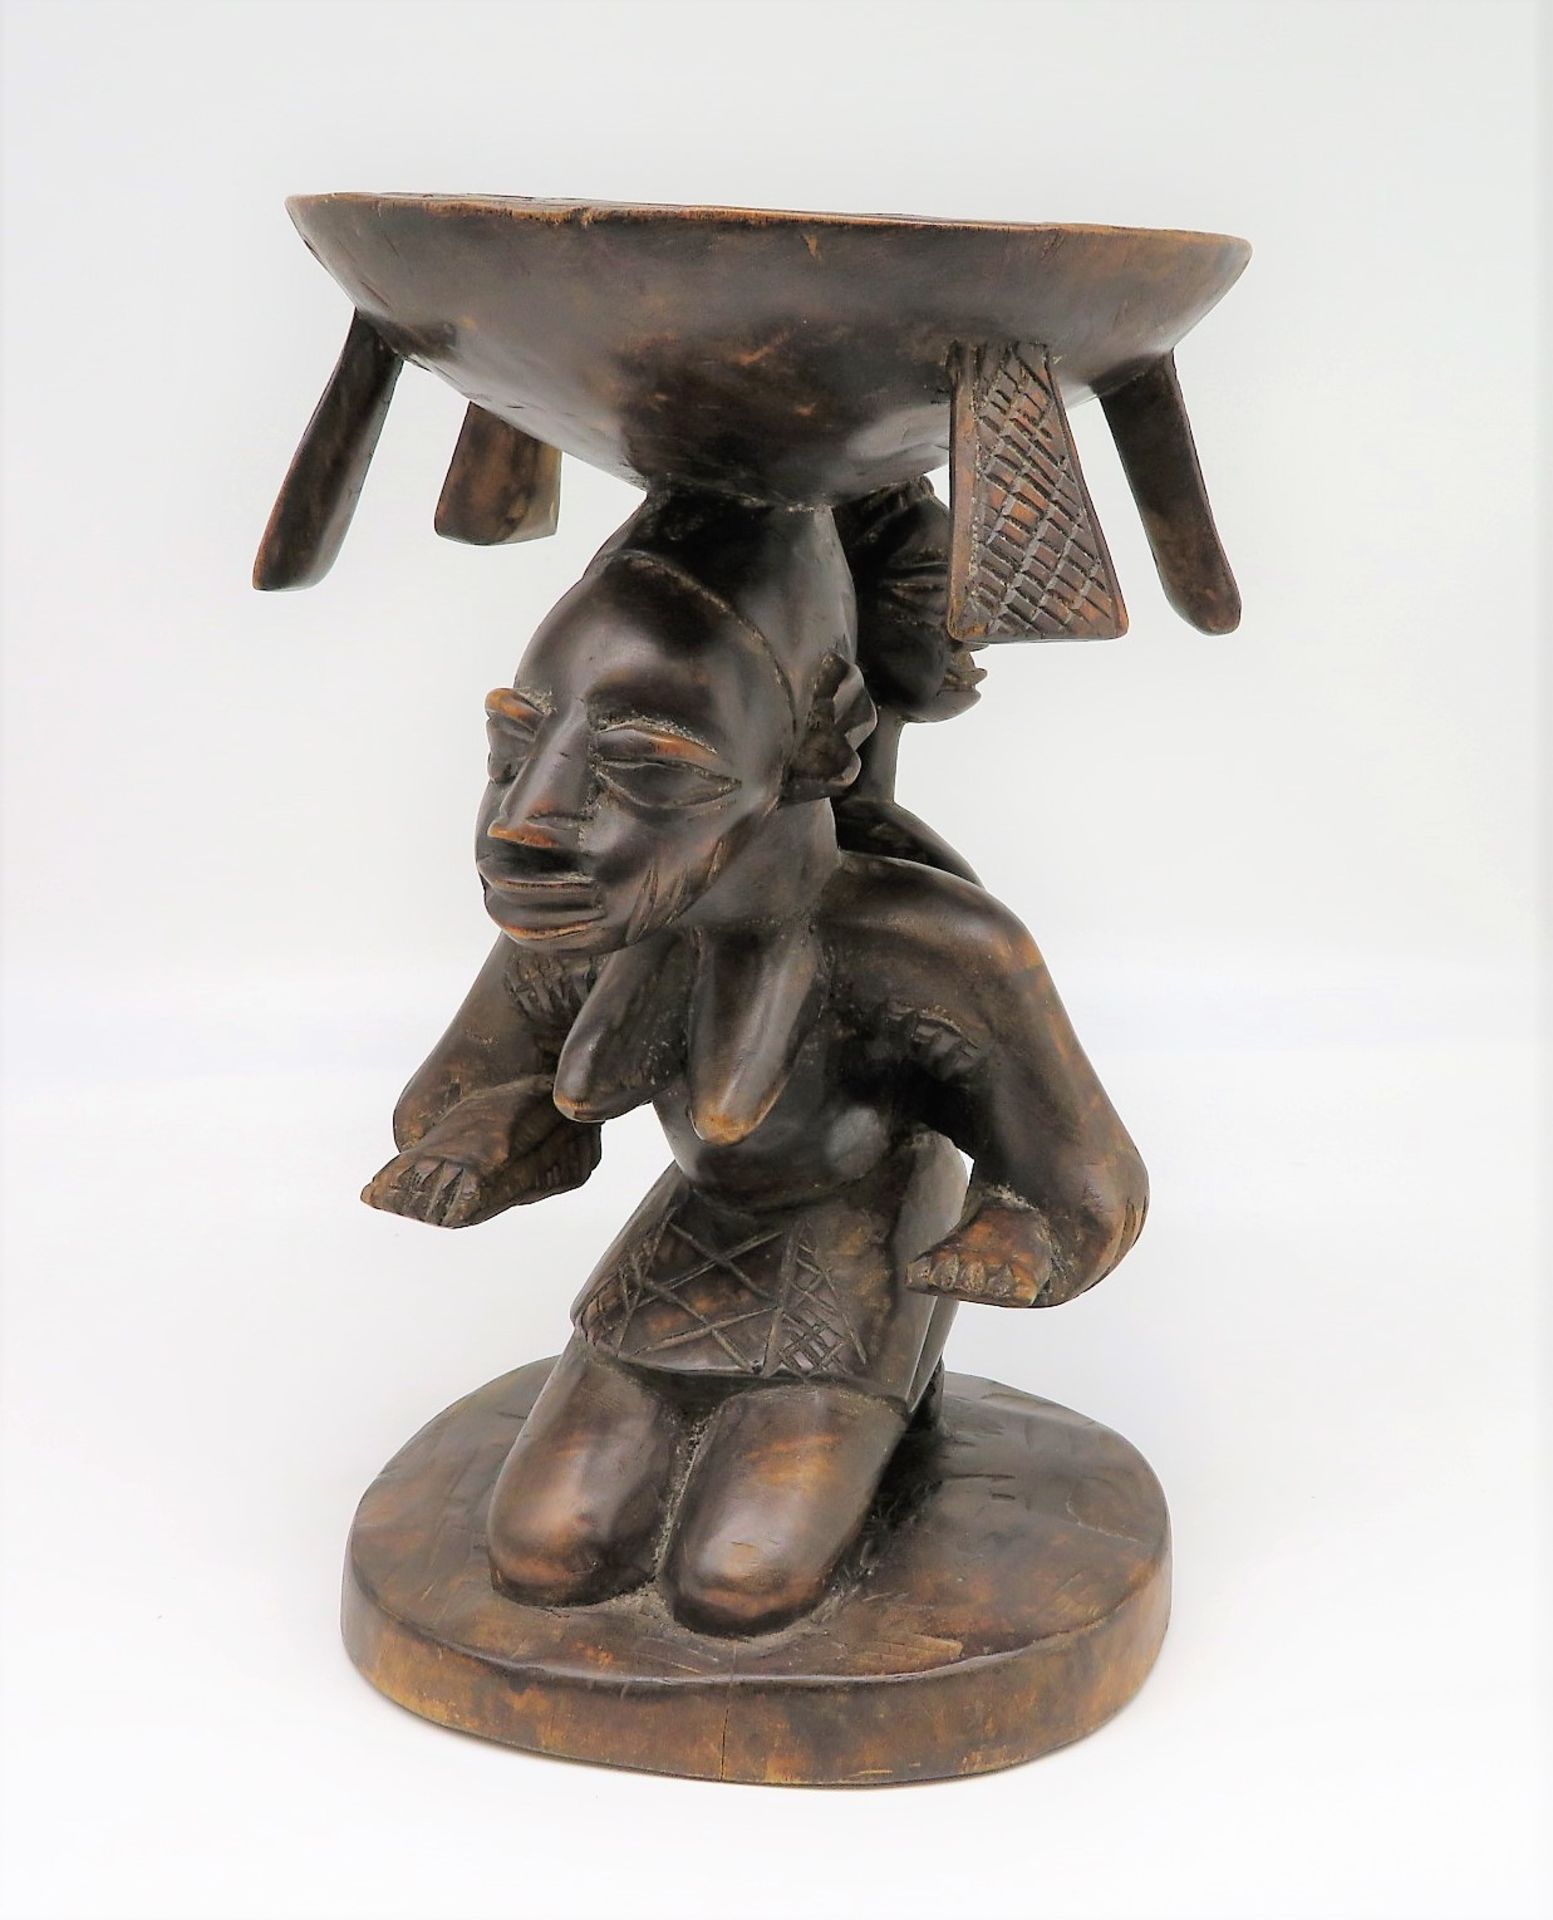 Schale in Form einer Sitzendes mit Kind, Afrika, Holz geschnitzt, h 31 cm, d 21 cm.